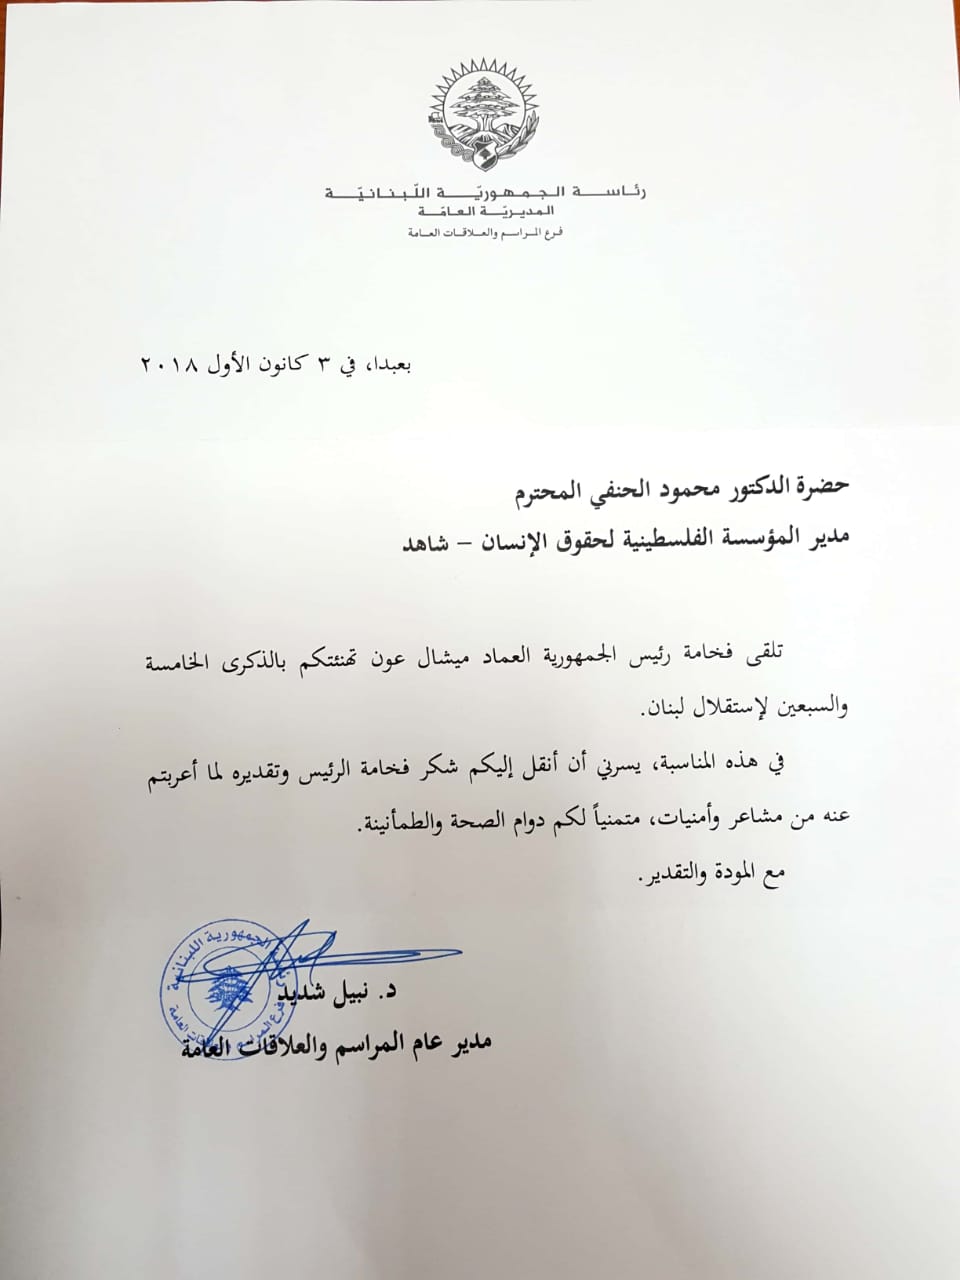 (شاهد) تتلقى رسالة شكر من رئاسة الجمهورية اللبنانية 